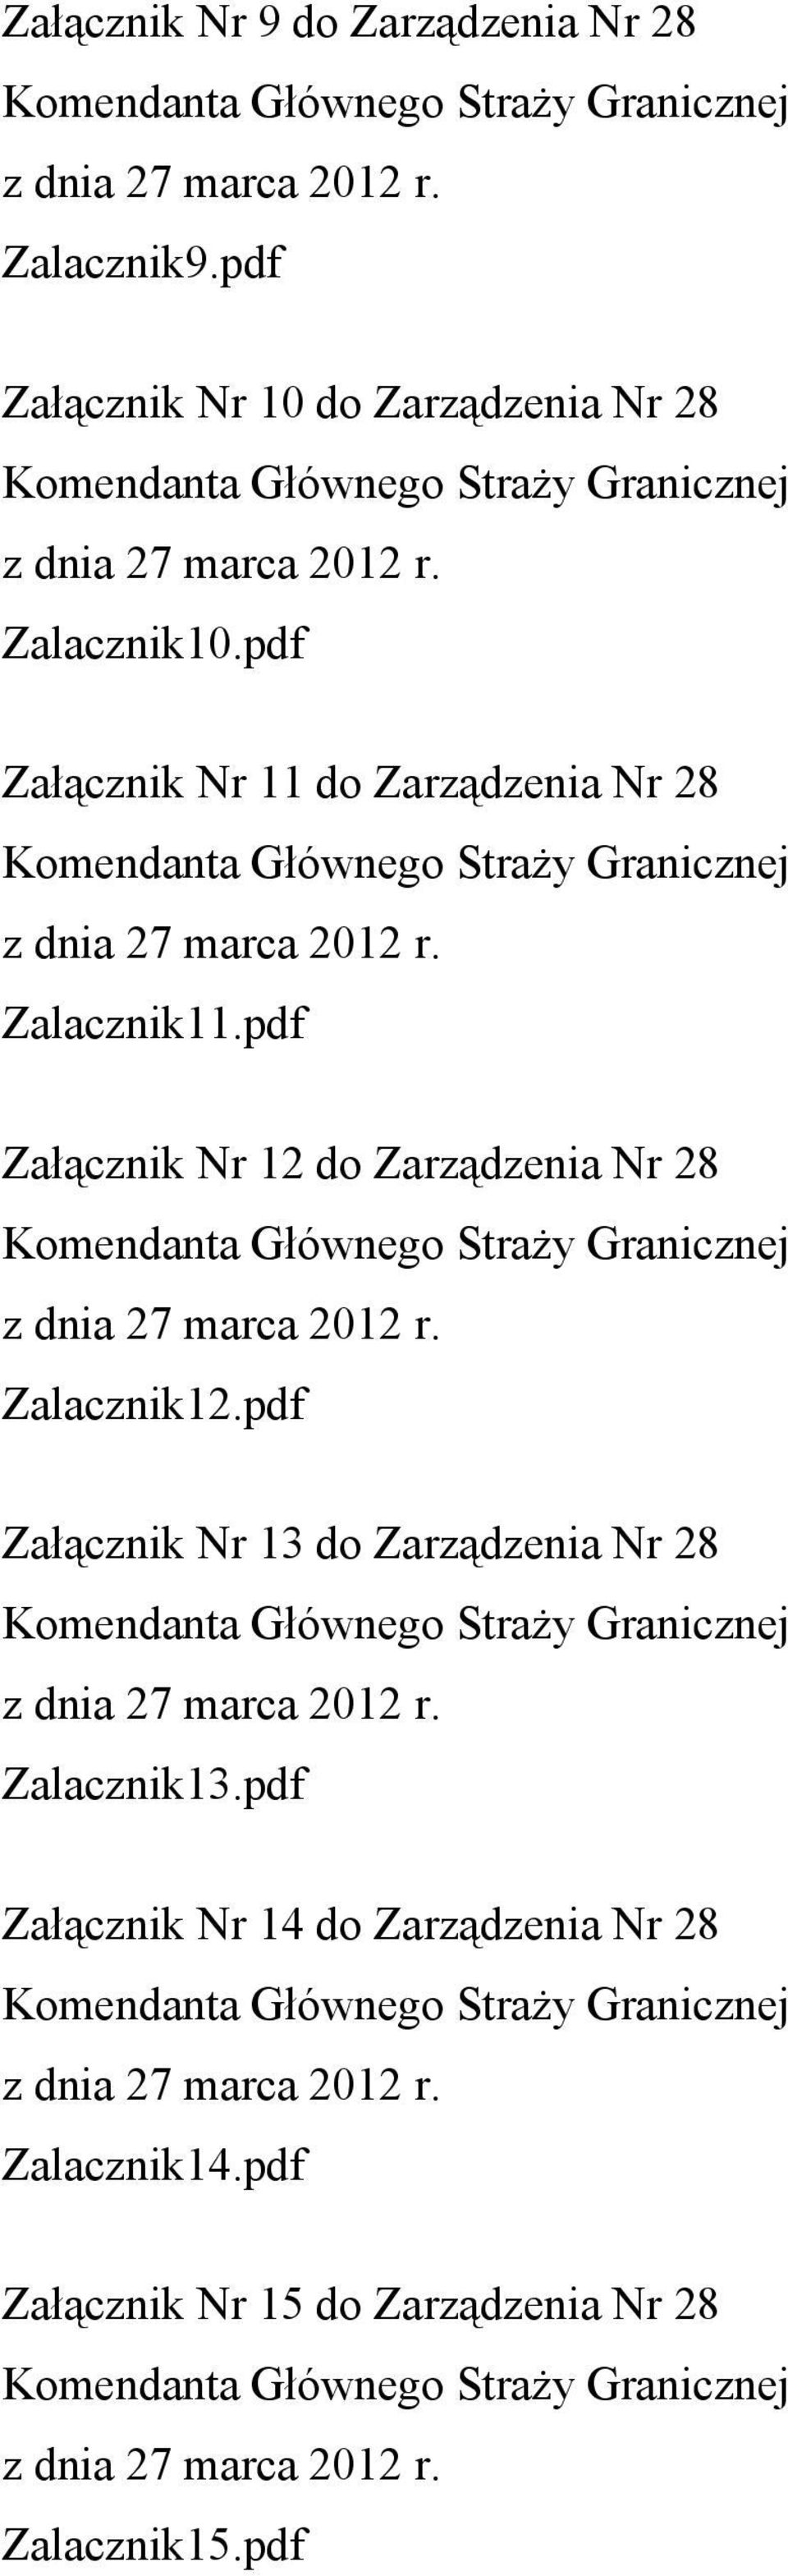 pdf Załącznik Nr 11 do Zarządzenia Nr 28 Zalacznik11.